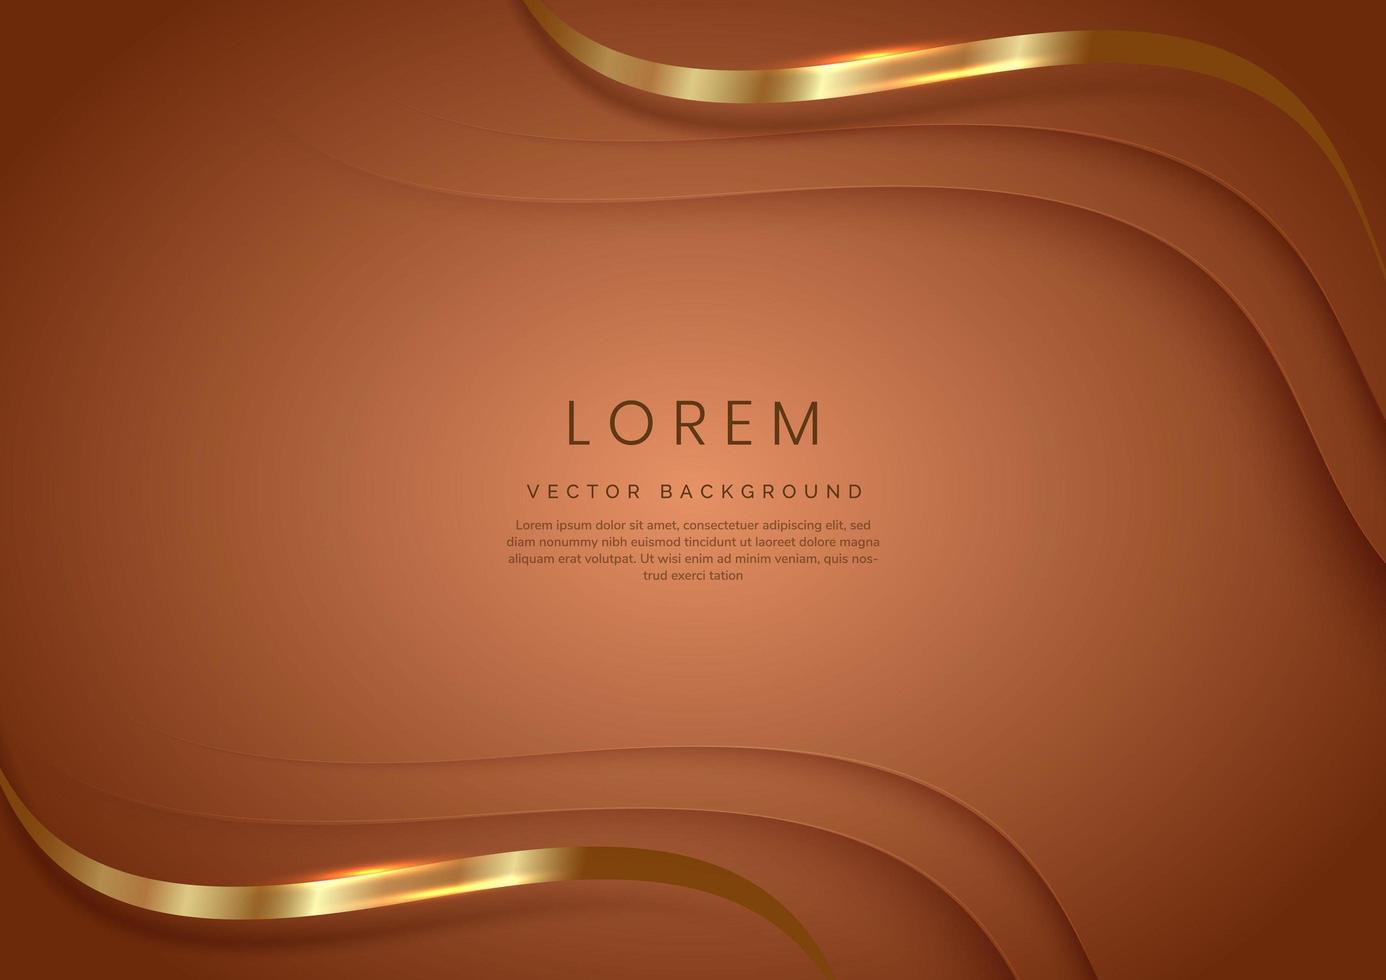 3d modelo de luxo moderno design forma curva de ouro e linha curva dourada em fundo marrom. vetor